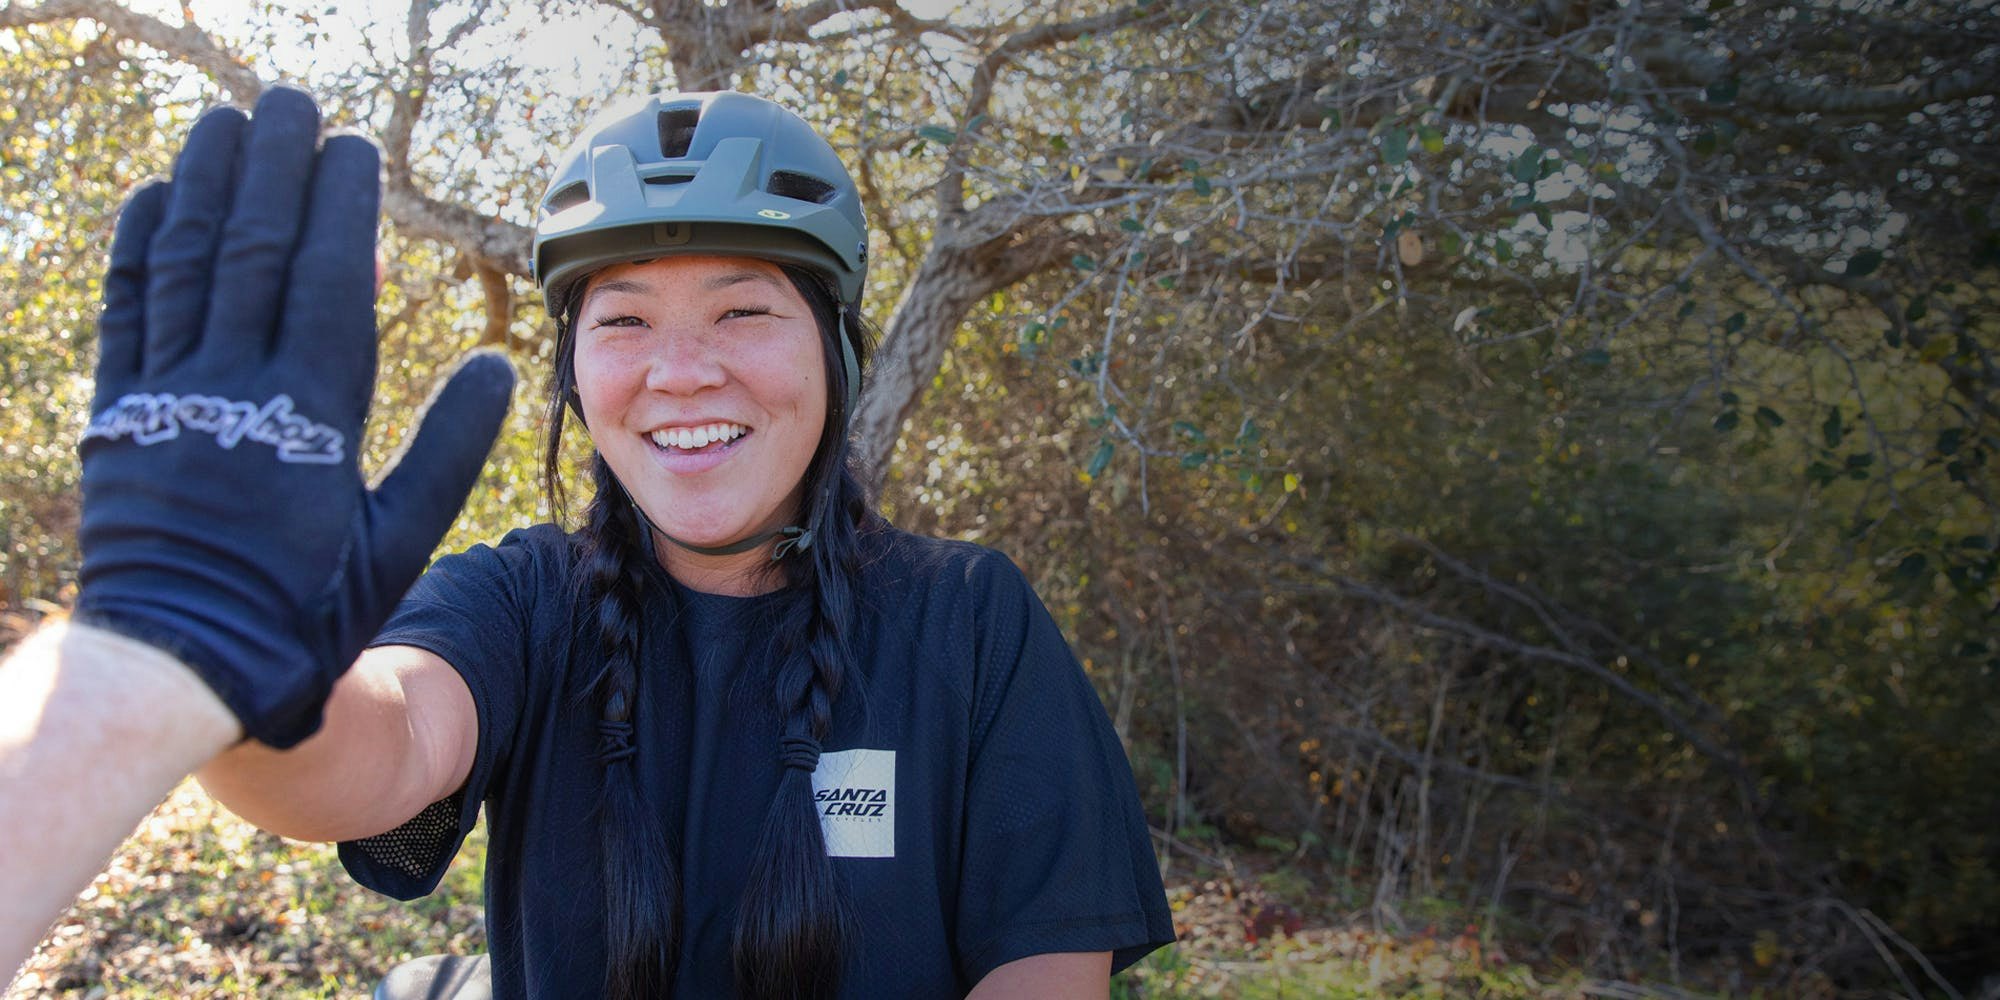 Santa Cruz Bicycles Mitarbeiterin Sarah Bietsch gibt einem Fotografen ein High-Five.